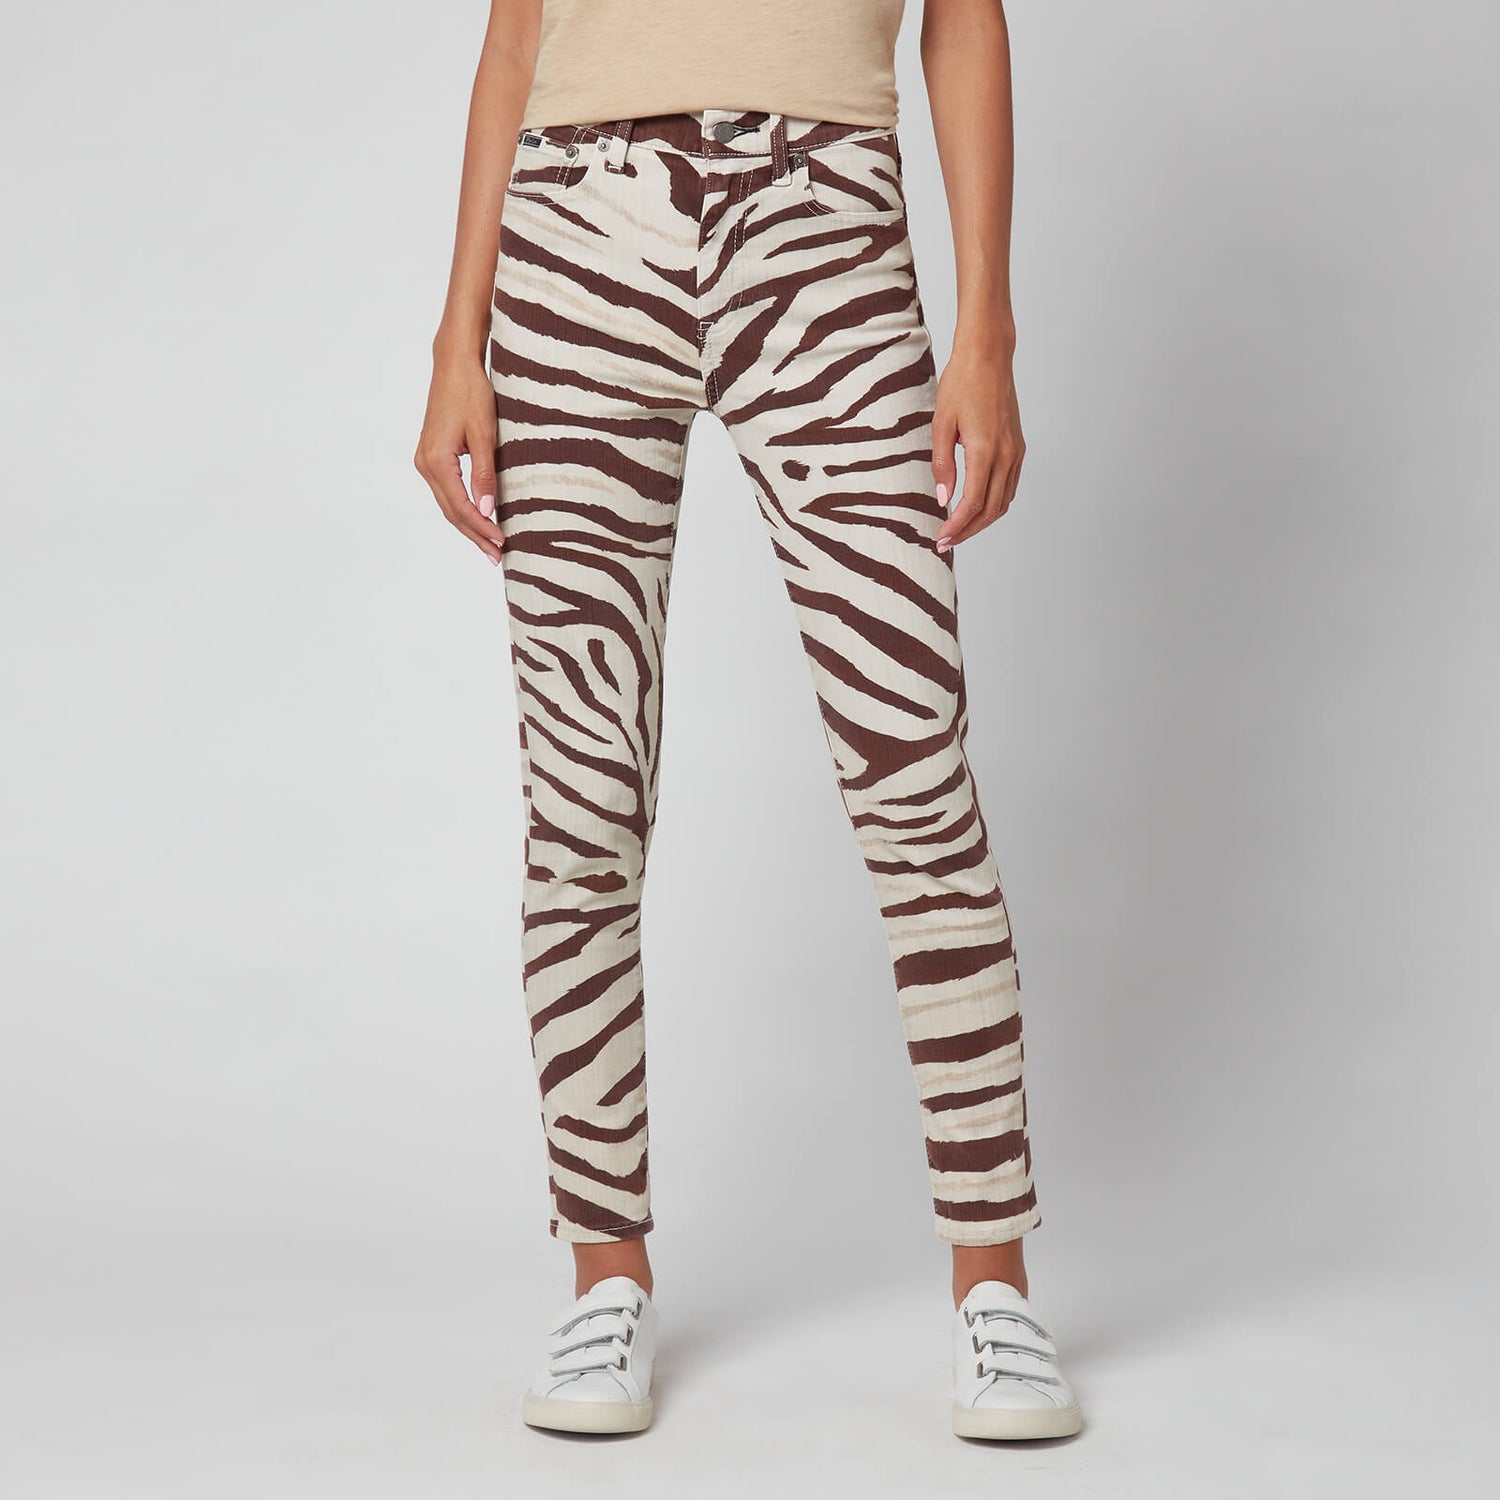 Polo Ralph Lauren Women's High Rise Skinny Jeans - Black/White Zebra - 27